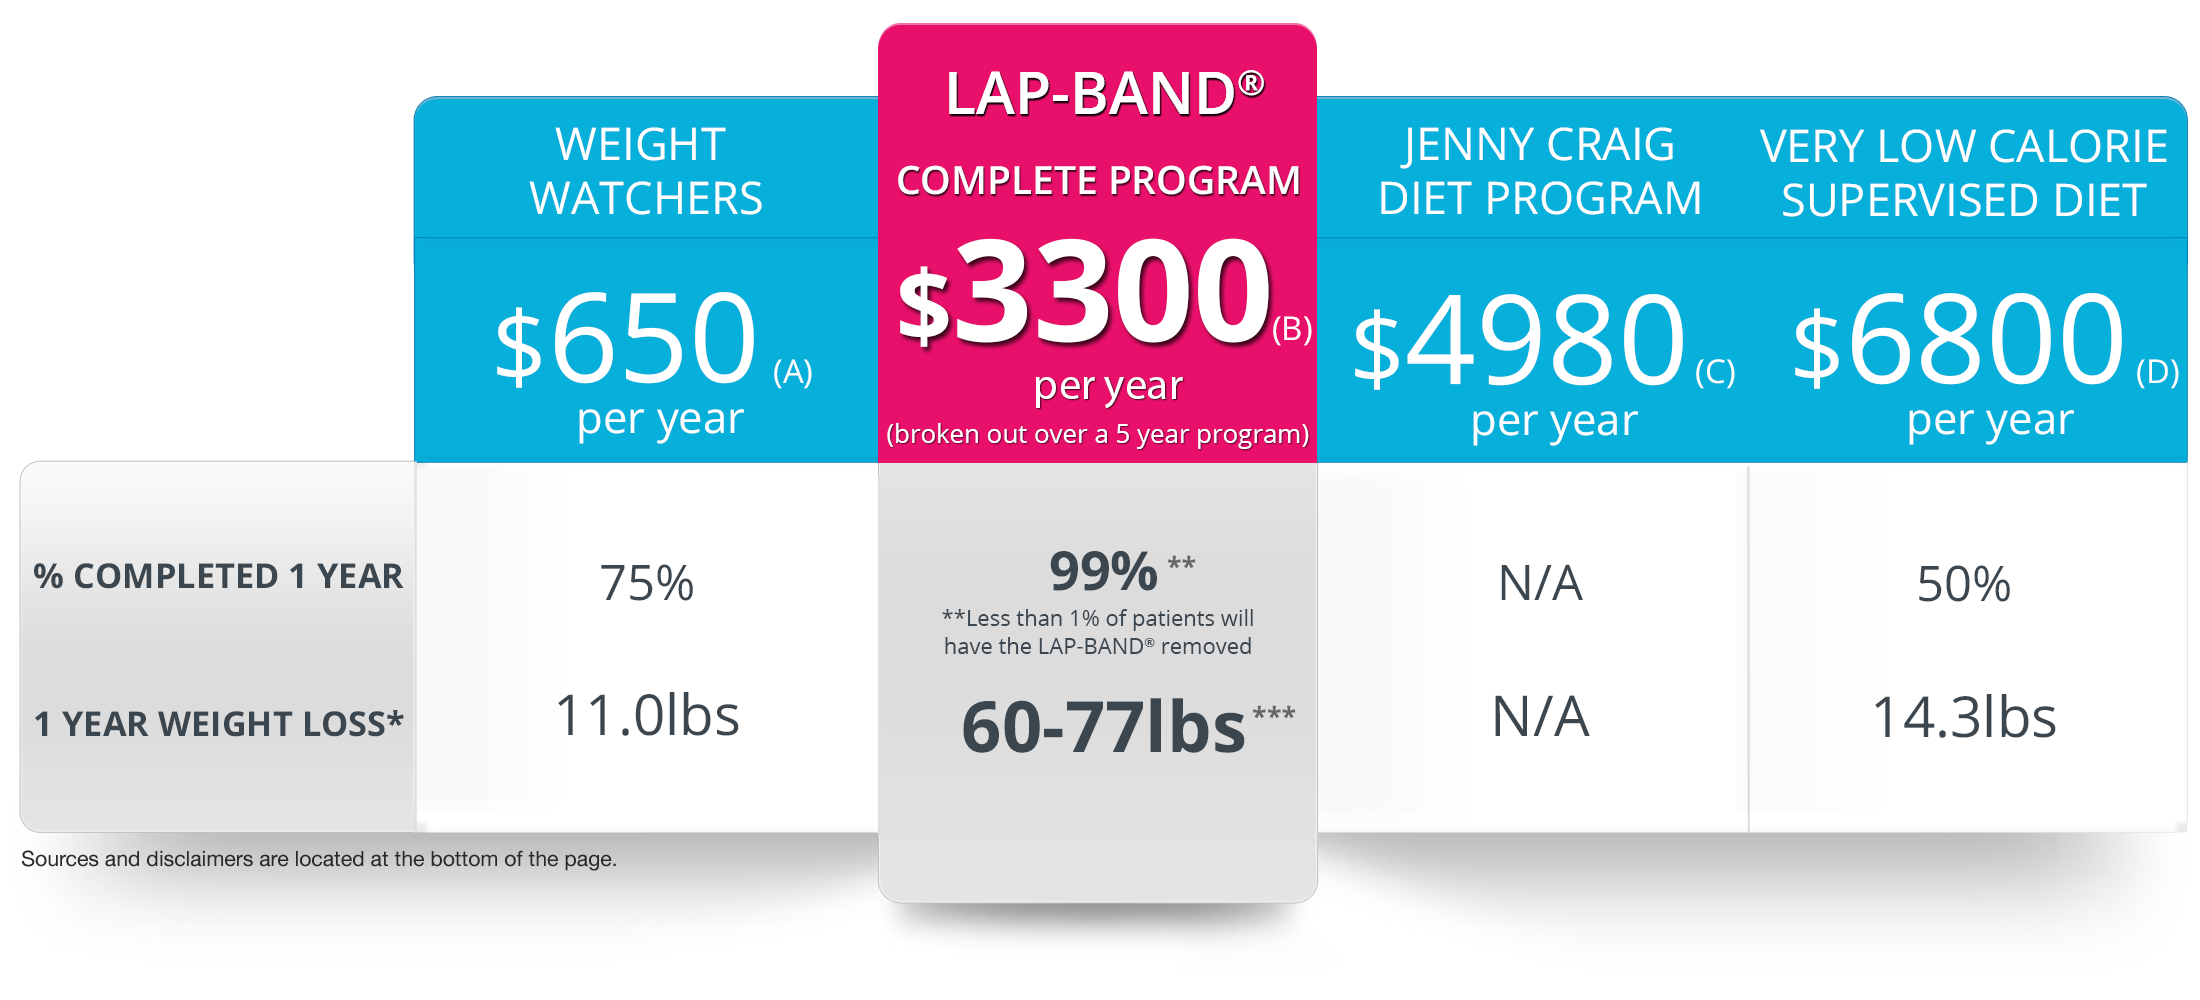 Diet Program Comparison Chart